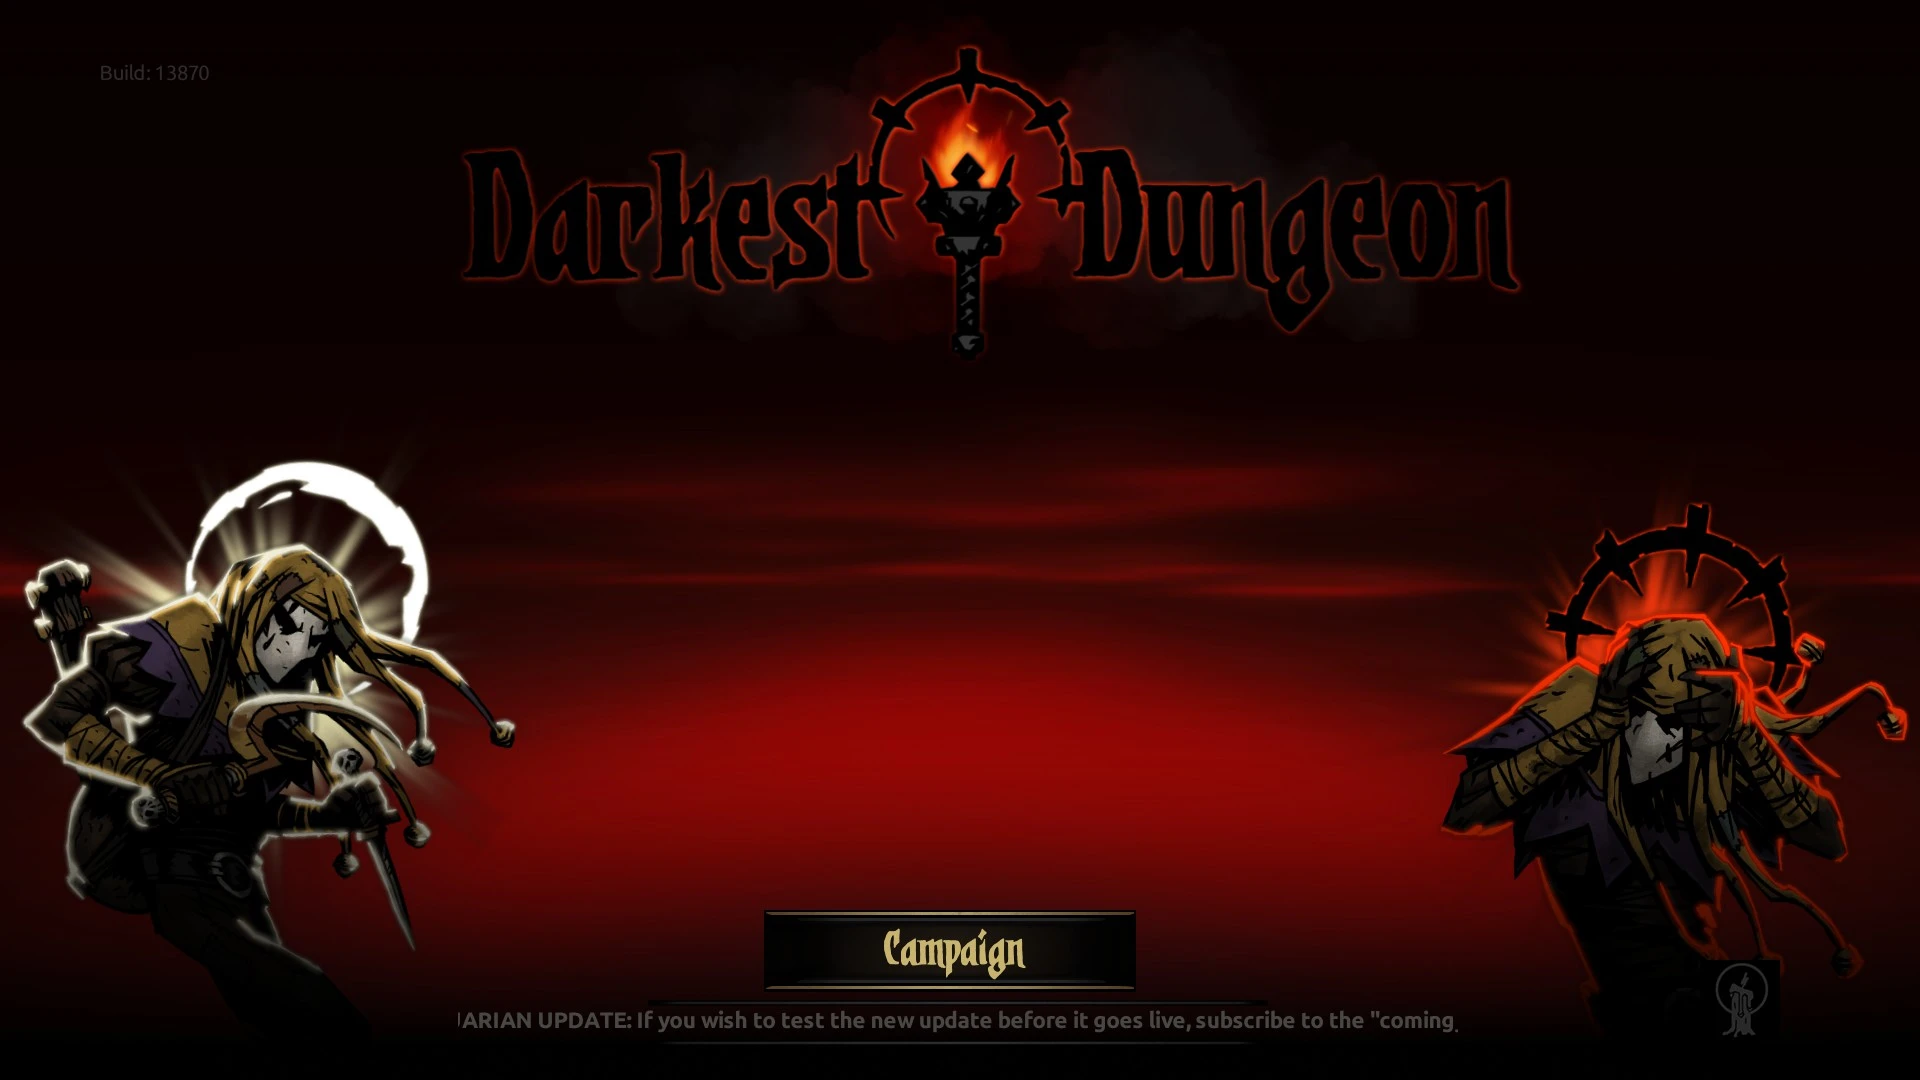 darkest dungeon 2 hero shrines